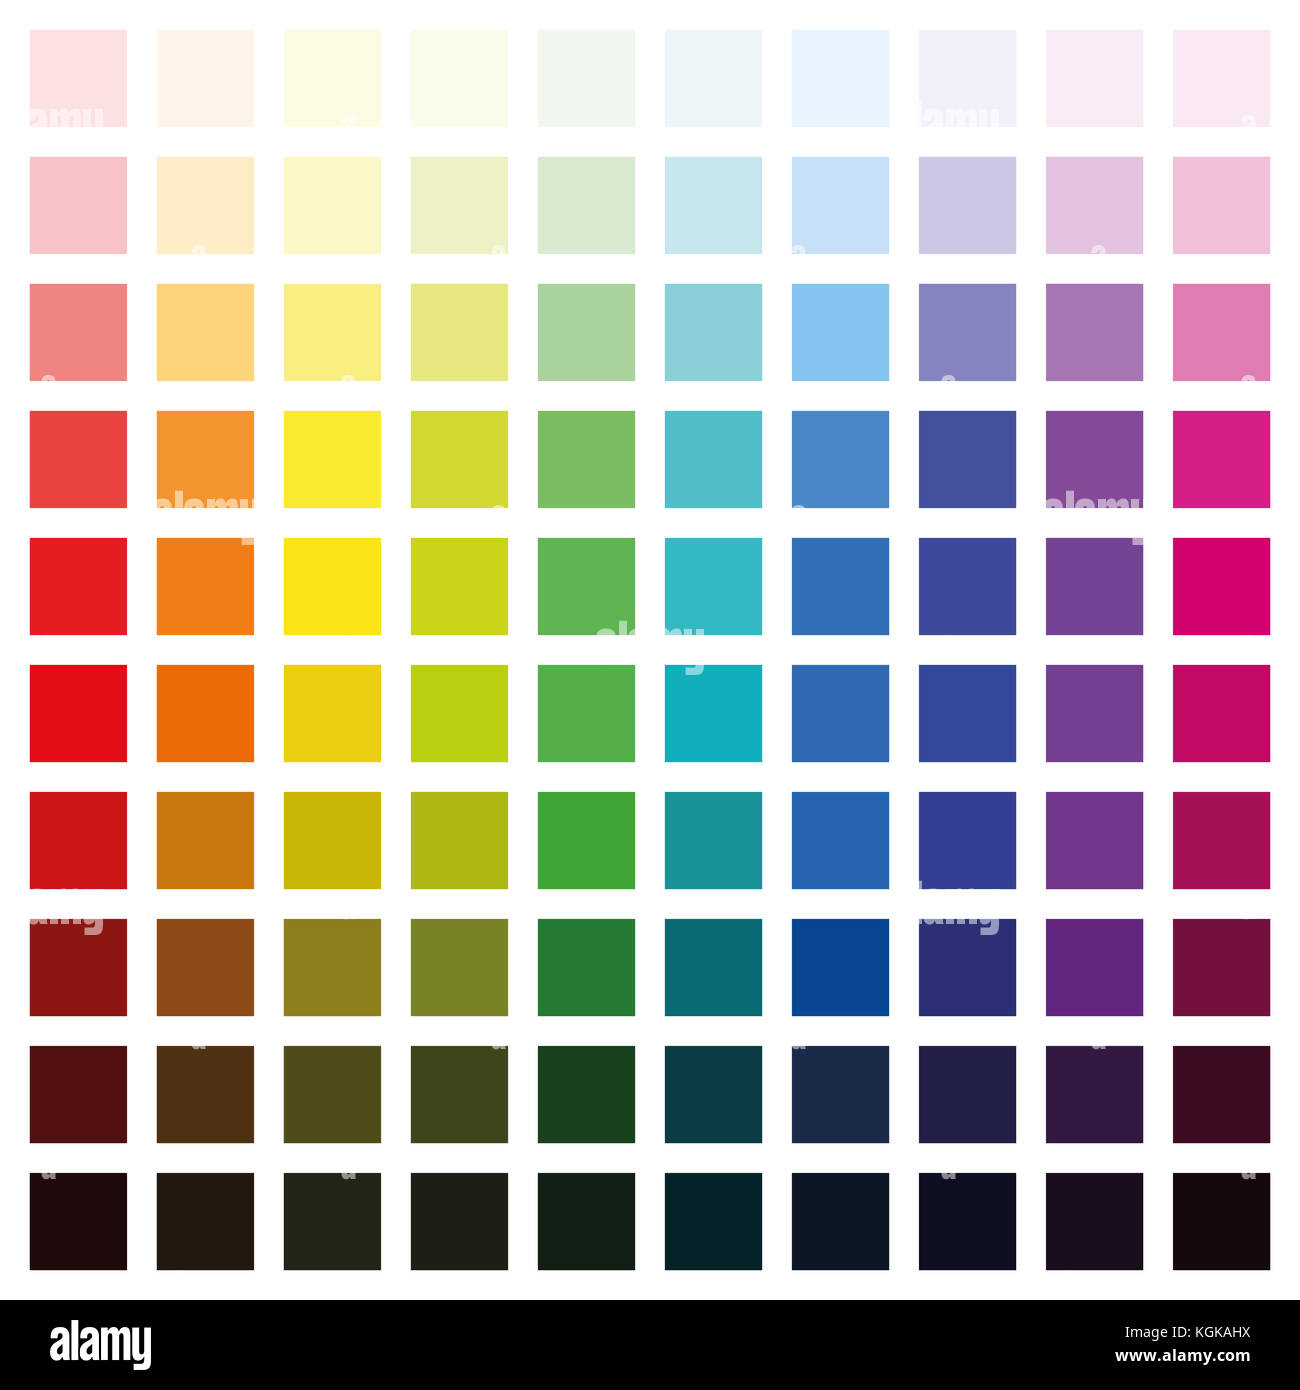 Spettro di colore grafico con centinaia di colori differenti in varie saturazione da chiaro a scuro - quadrato formato dimensioni immagine su sfondo bianco. Foto Stock